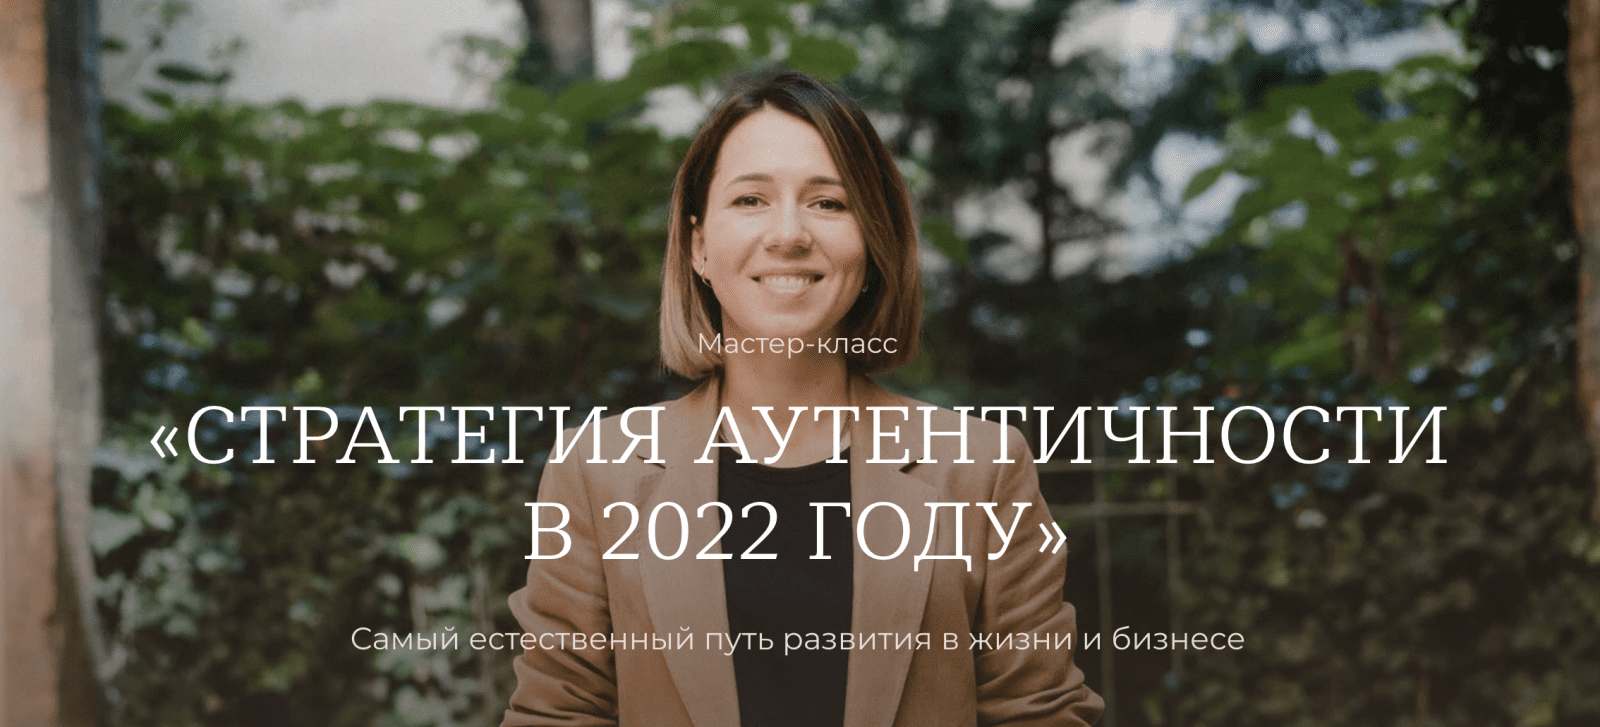 Изображение [Тати Куренкова] Мастер-класс «Стратегия аутентичности в 2022 году» в посте 252780